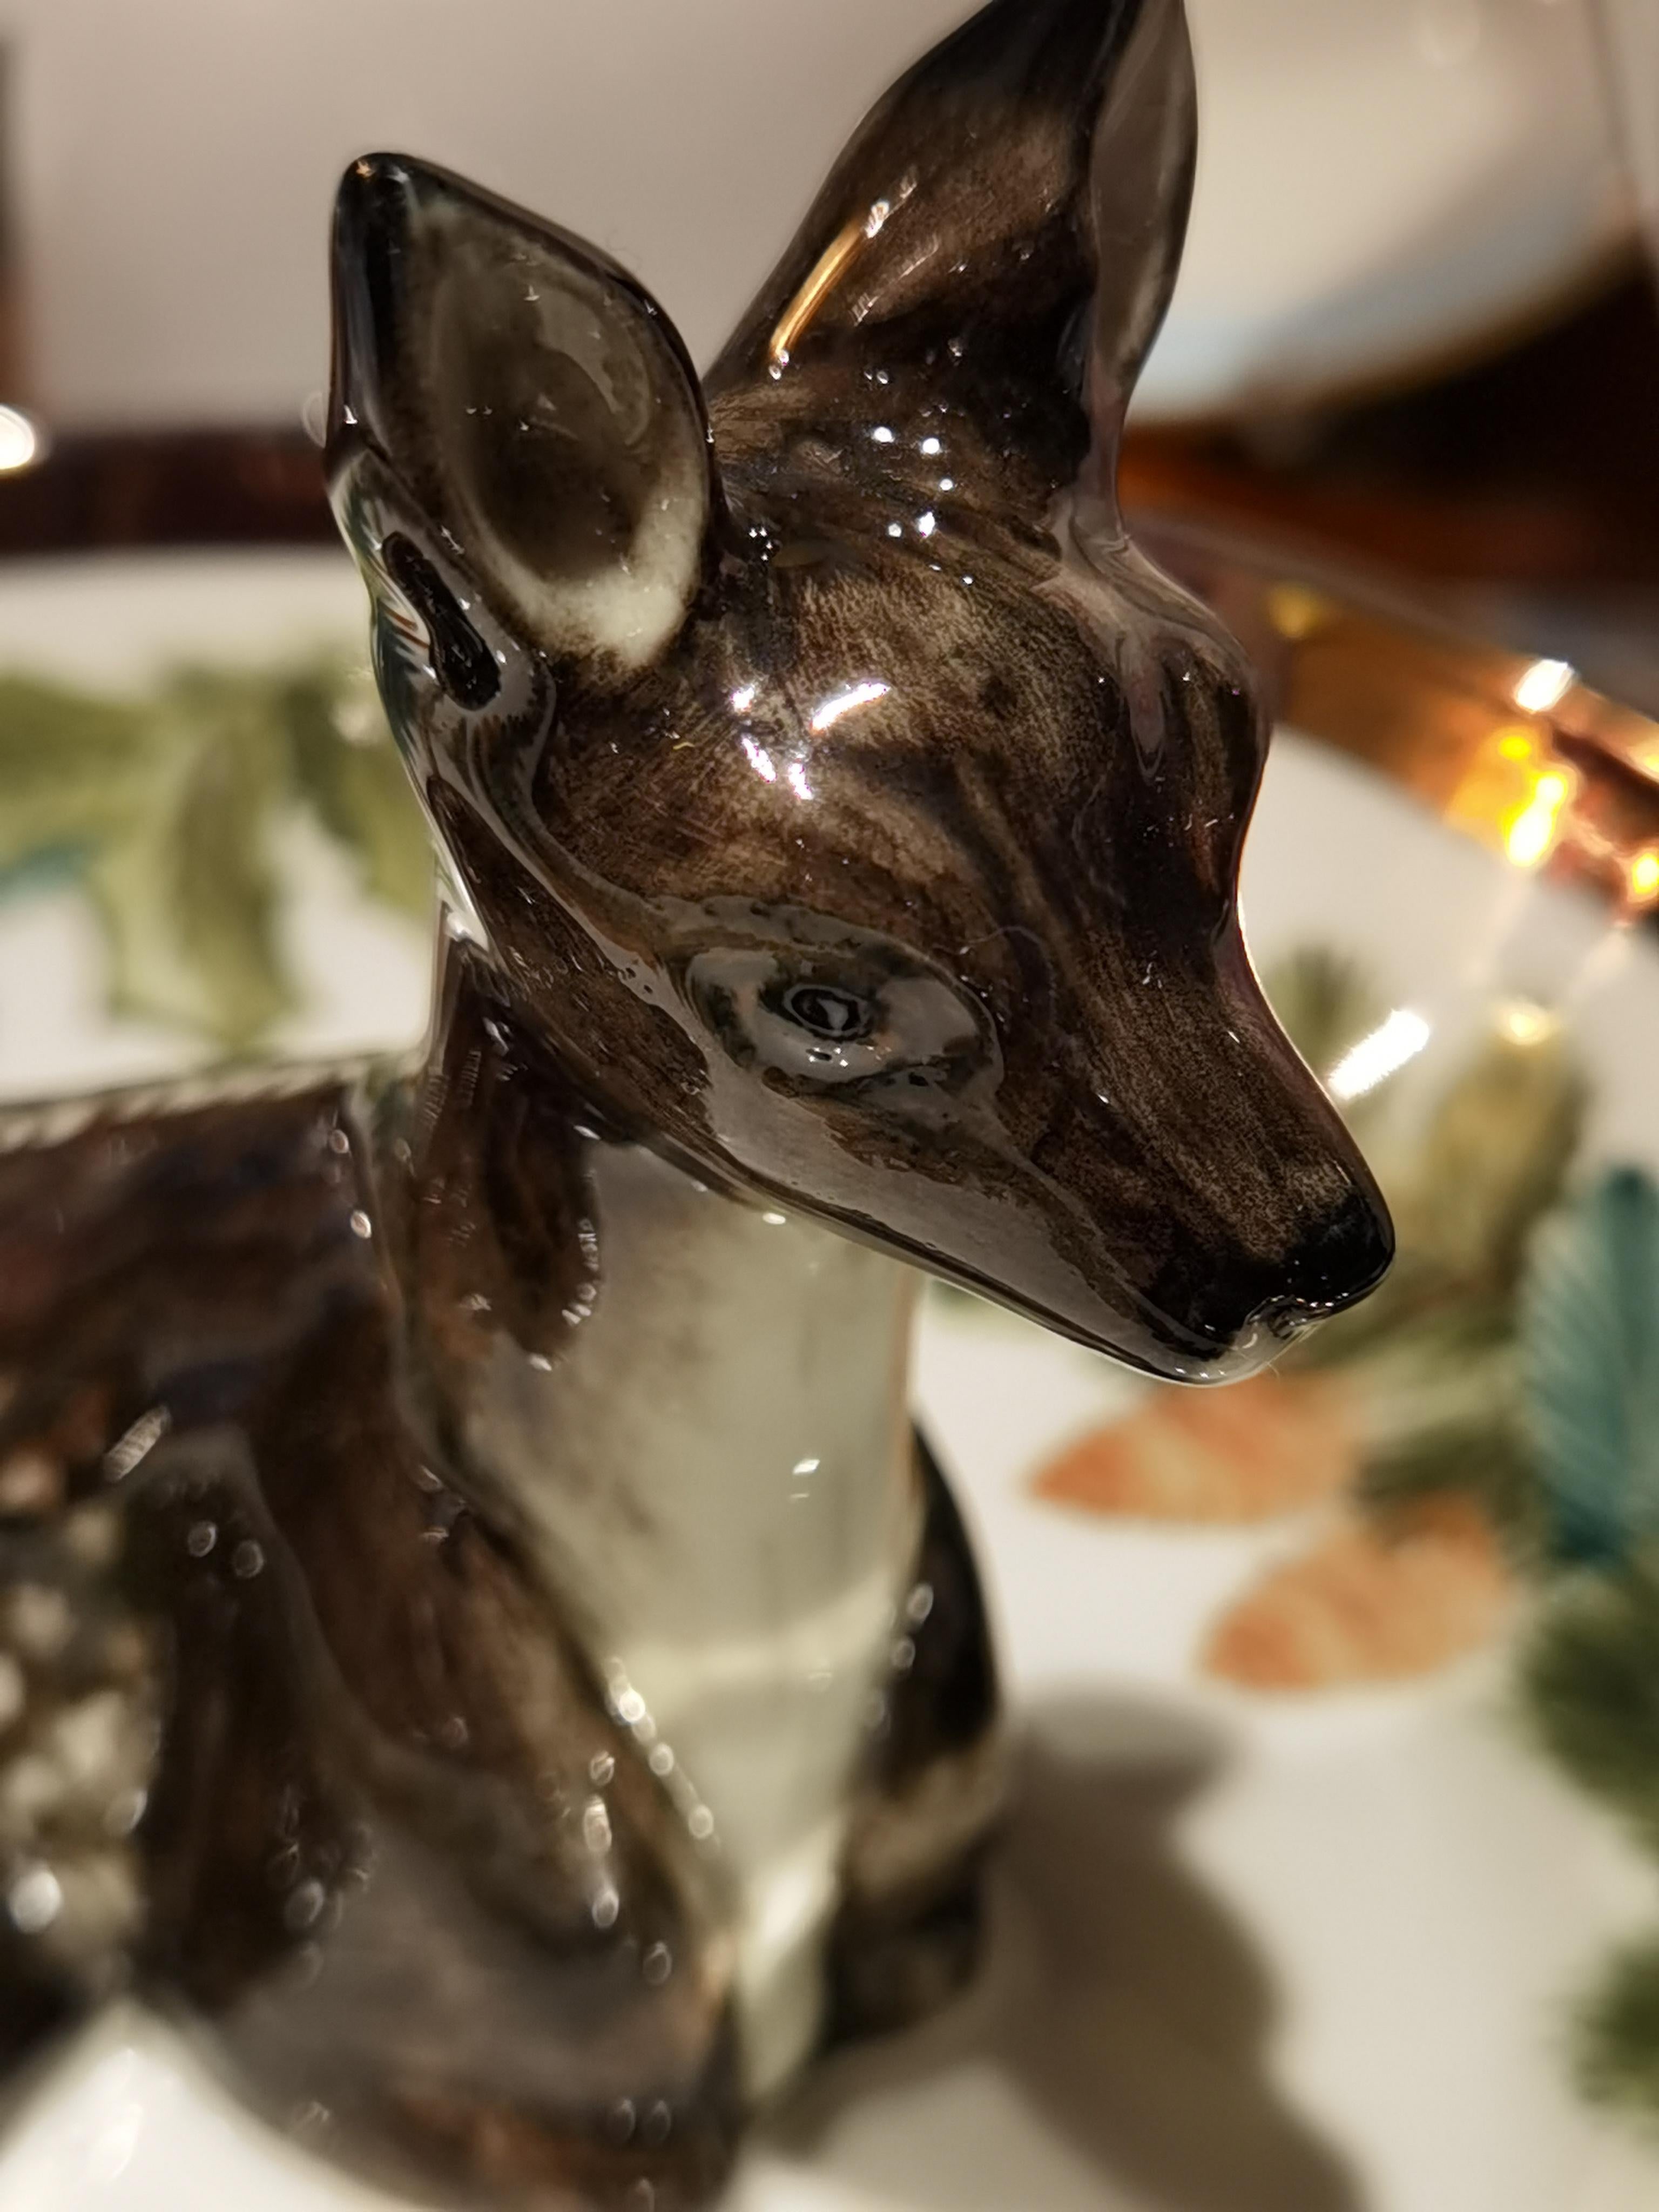 Vollständig handgefertigte Porzellanschale mit einem freihändig gemalten Bambi in der Mitte der Schale. Die charmante Bambi-Figur ist schwarz bemalt und sitzt in der Mitte der Schale. Die Porzellanschale ist in Platin eingefasst und mit einer